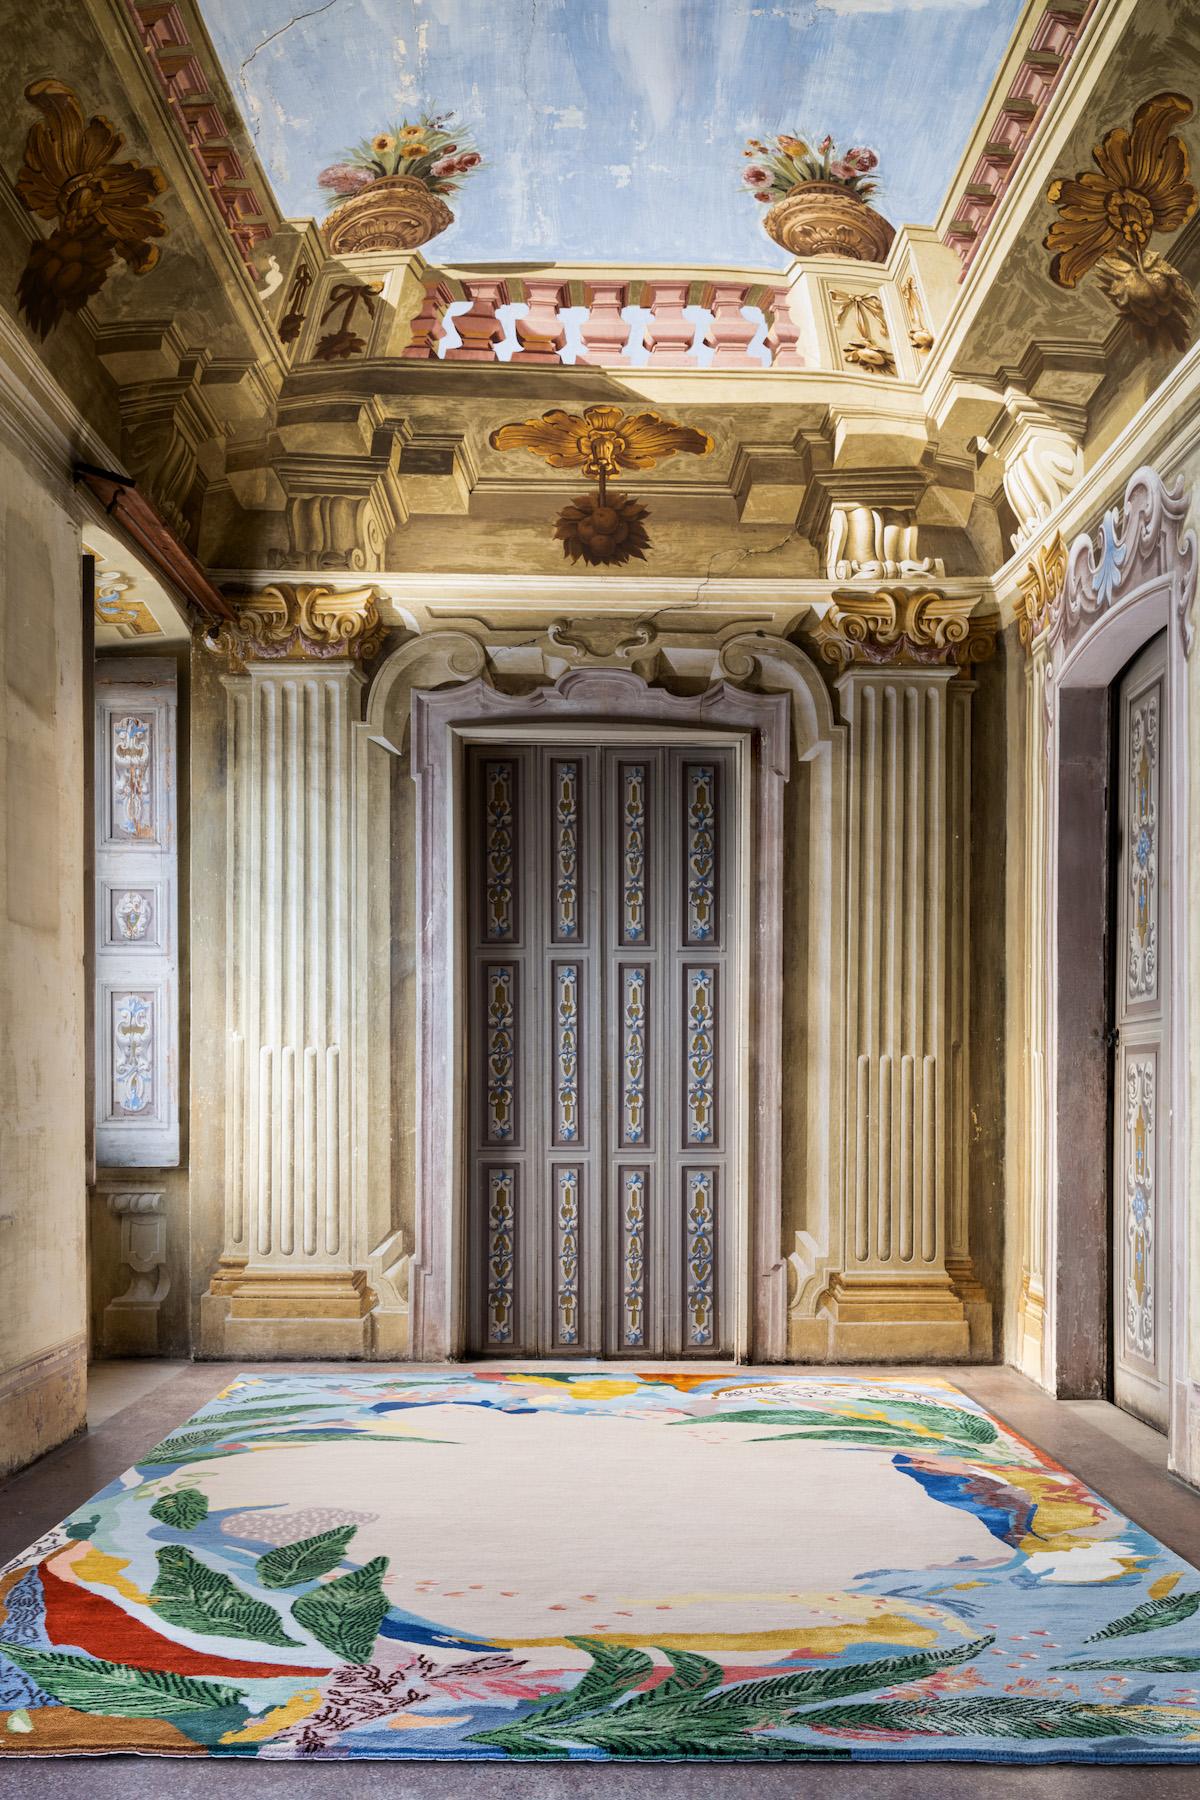 Die Malerin Micaela Yearwood-Dan ließ sich von dem Konzept botanischer Räume und ihrer heilenden Wirkung inspirieren und entwarf ihren Teppich mit einem zentralen Wollfeld, das von einer lebhaften Kakophonie botanischer Seidenmuster umgeben ist, die